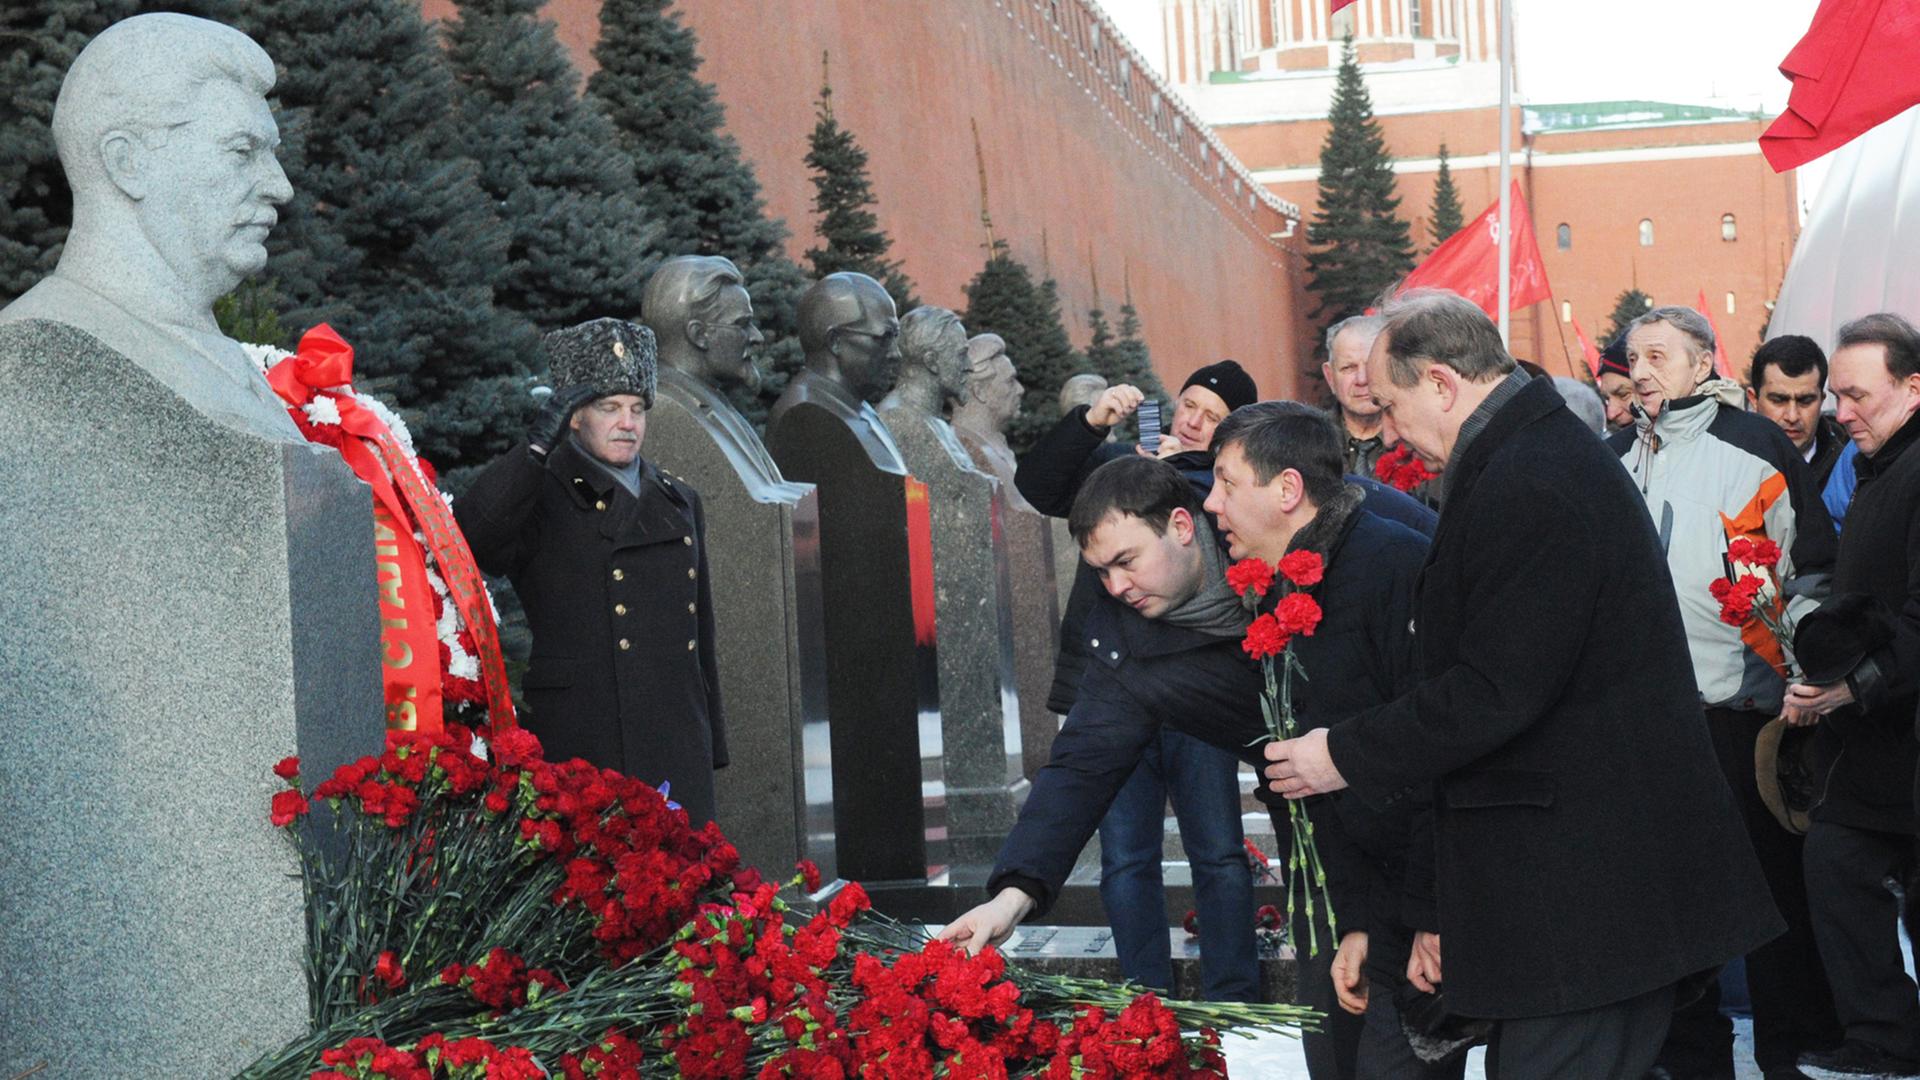 Politiker legen an einer Stalin-Büste Blumen nieder.